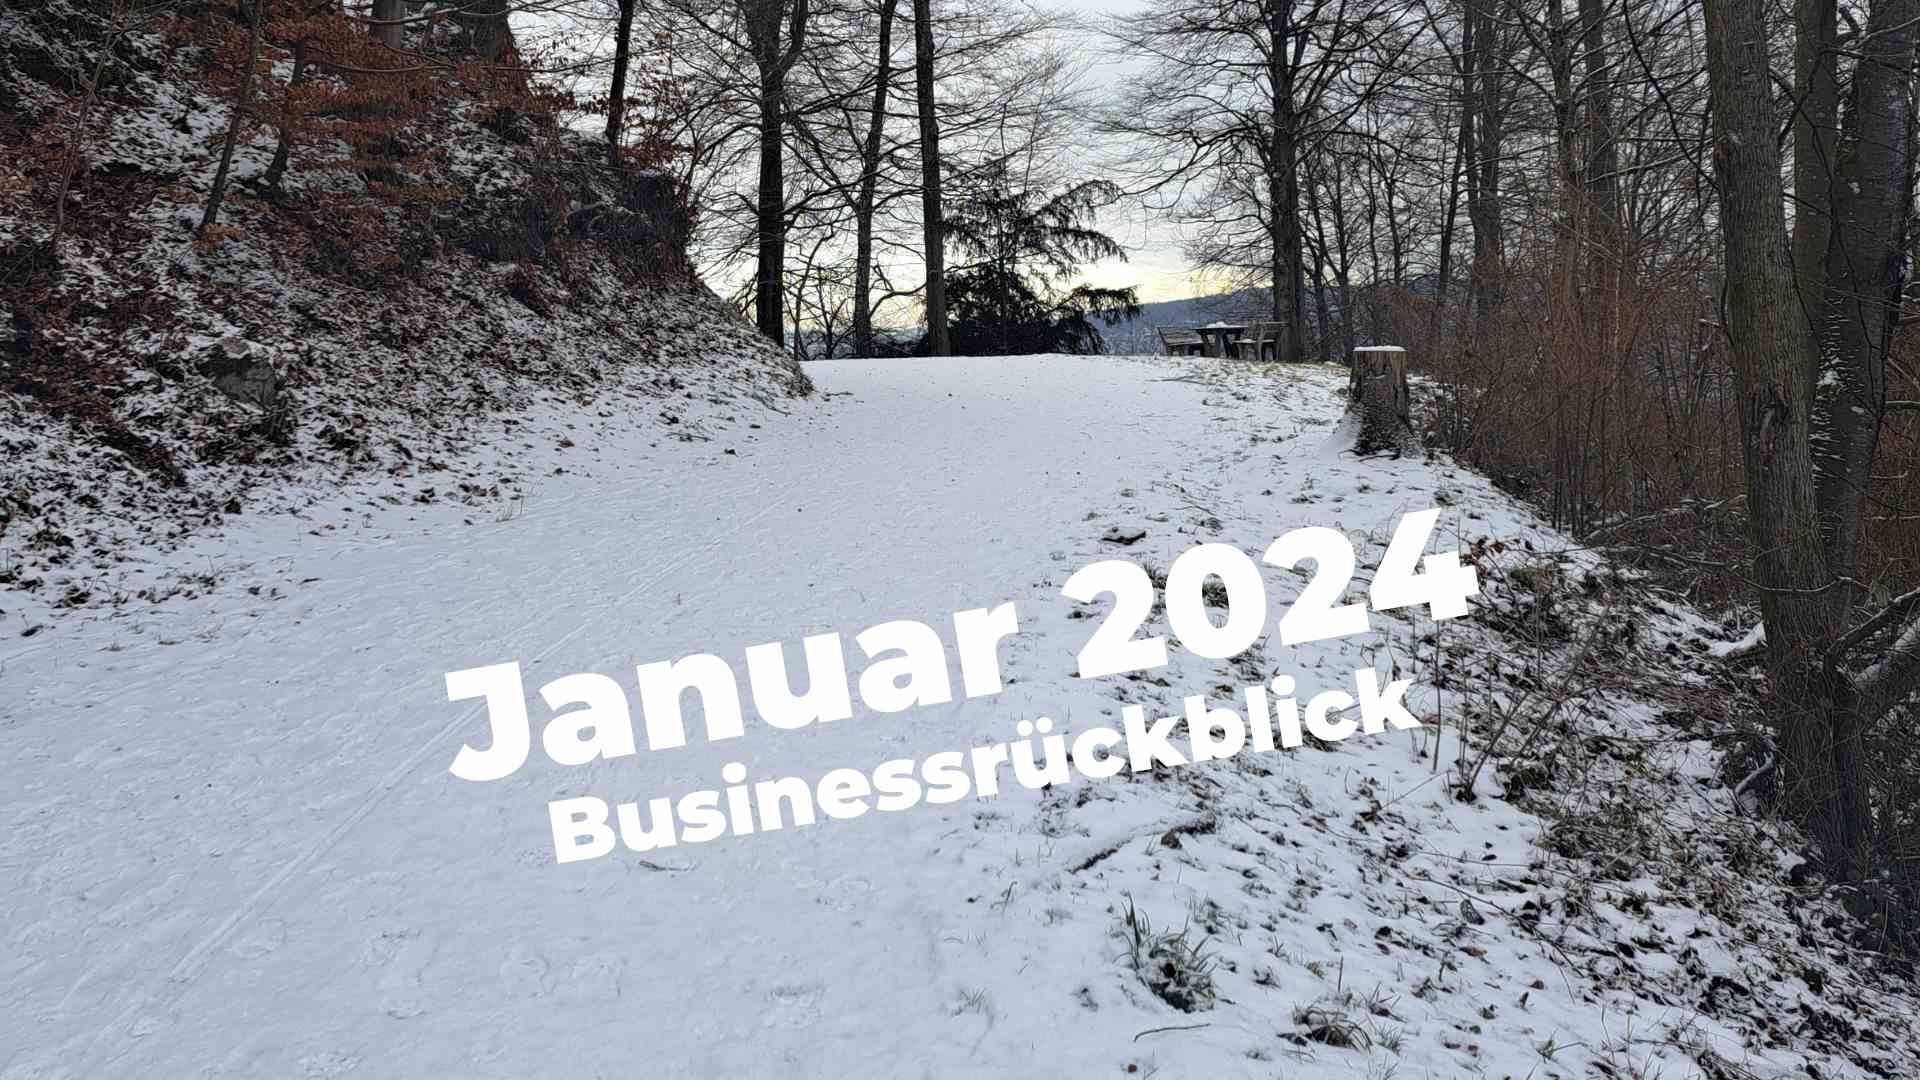 Verschneiter Waldweg: Januar 2024 Businessrückblick